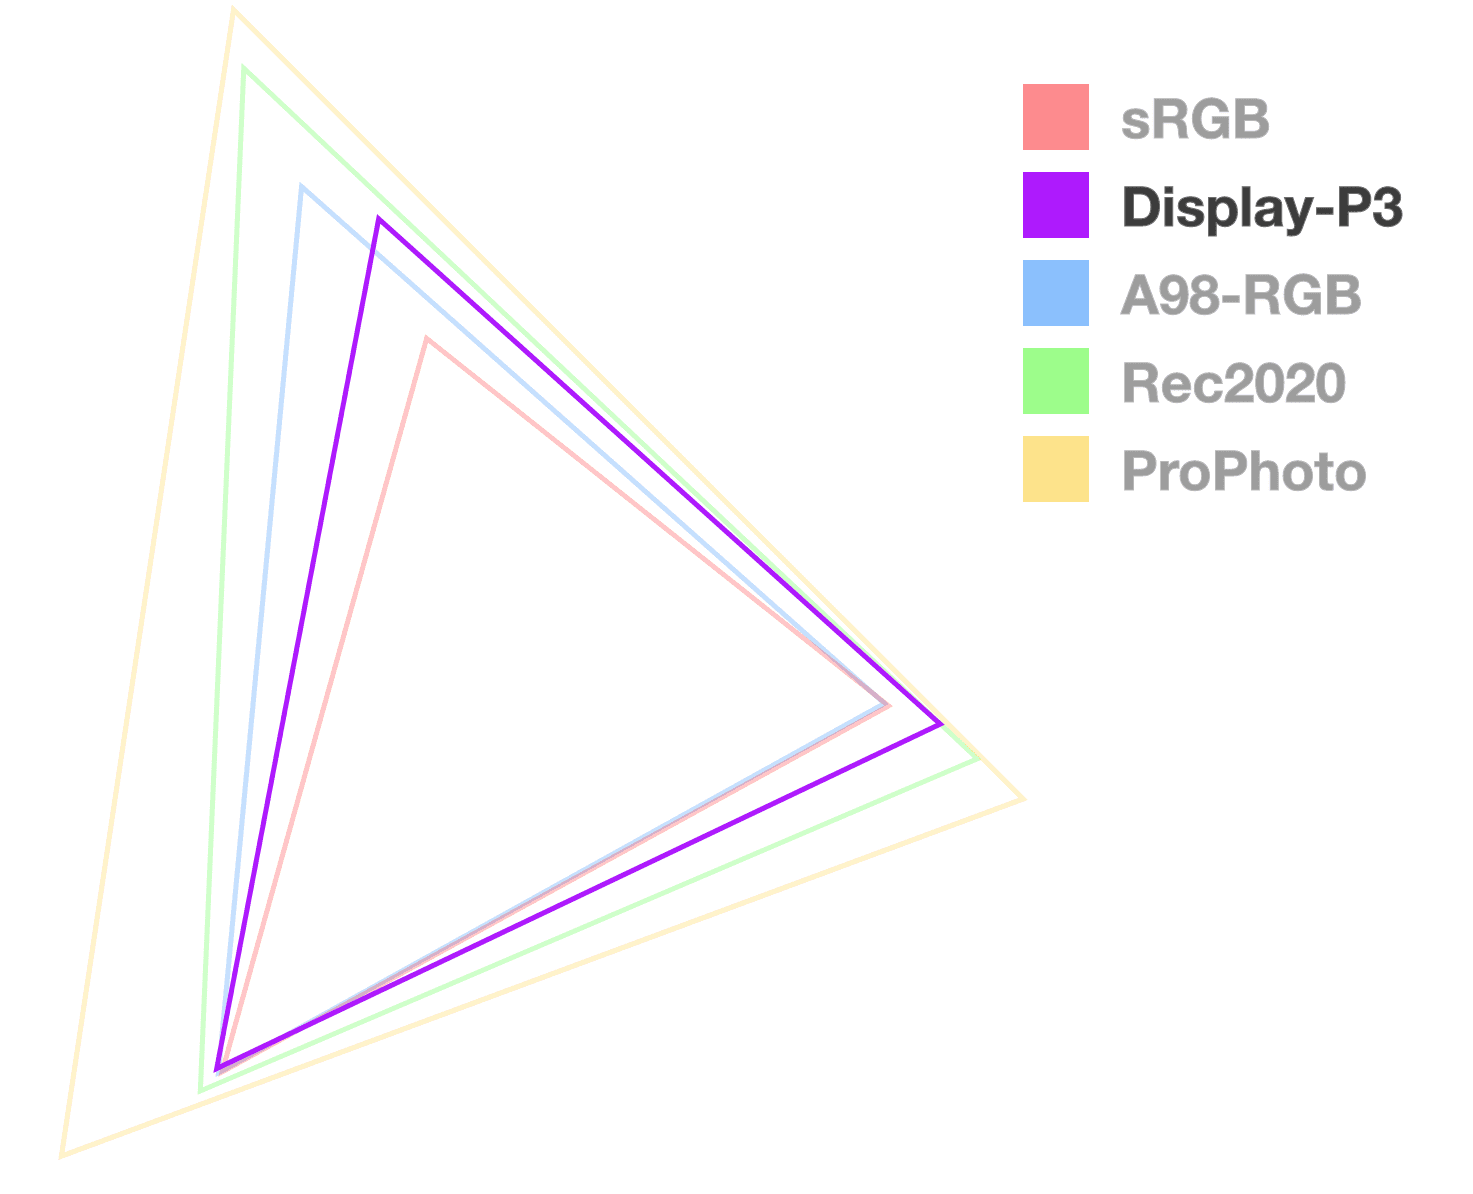 مثلث صفحه نمایش P3 تنها یک مثلث کاملاً مات است که به تجسم اندازه وسعت کمک می کند. از کوچکترین به نظر می رسد 2.